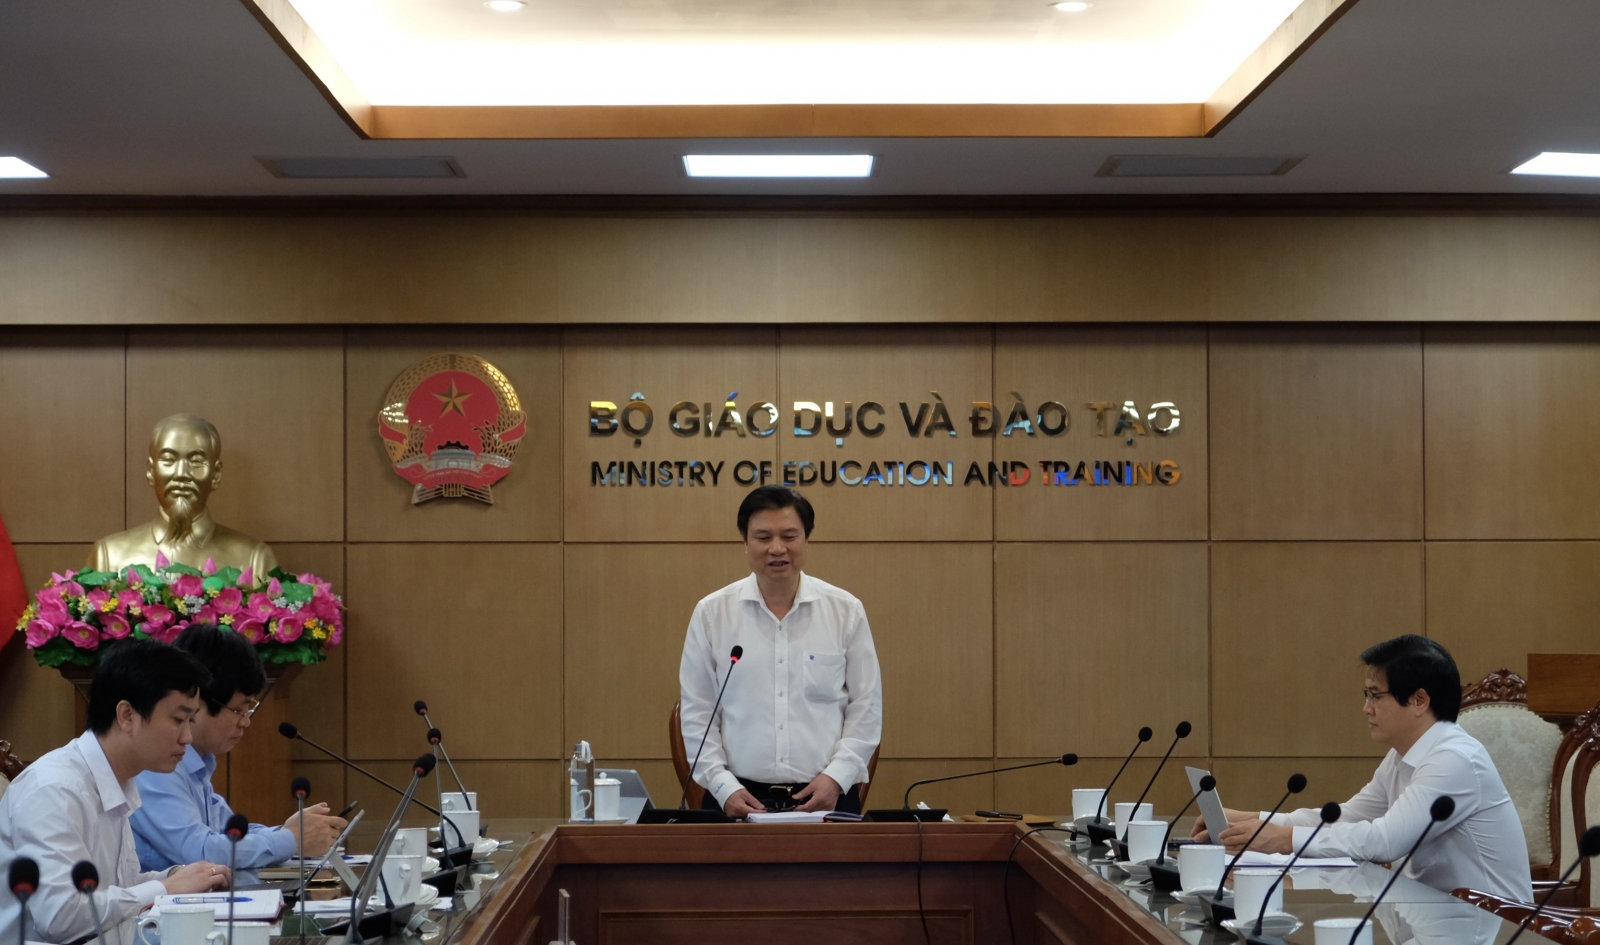 Thứ trưởng Nguyễn Hữu Độ nhấn mạnh 5 lưu ý với giáo dục Cần Thơ